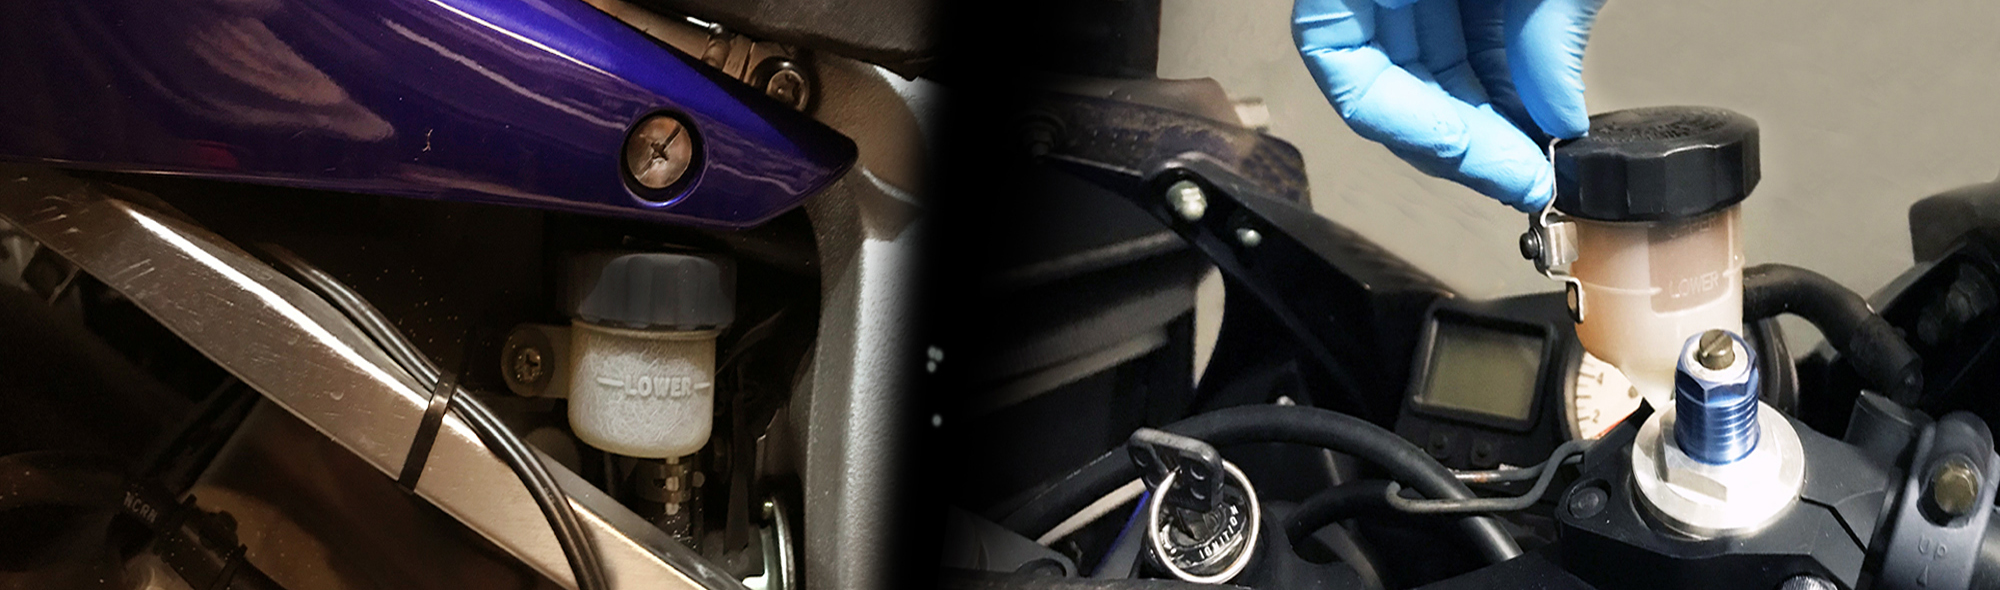 Прокачка тормозной системы и замена тормозной жидкости на мотоцикле